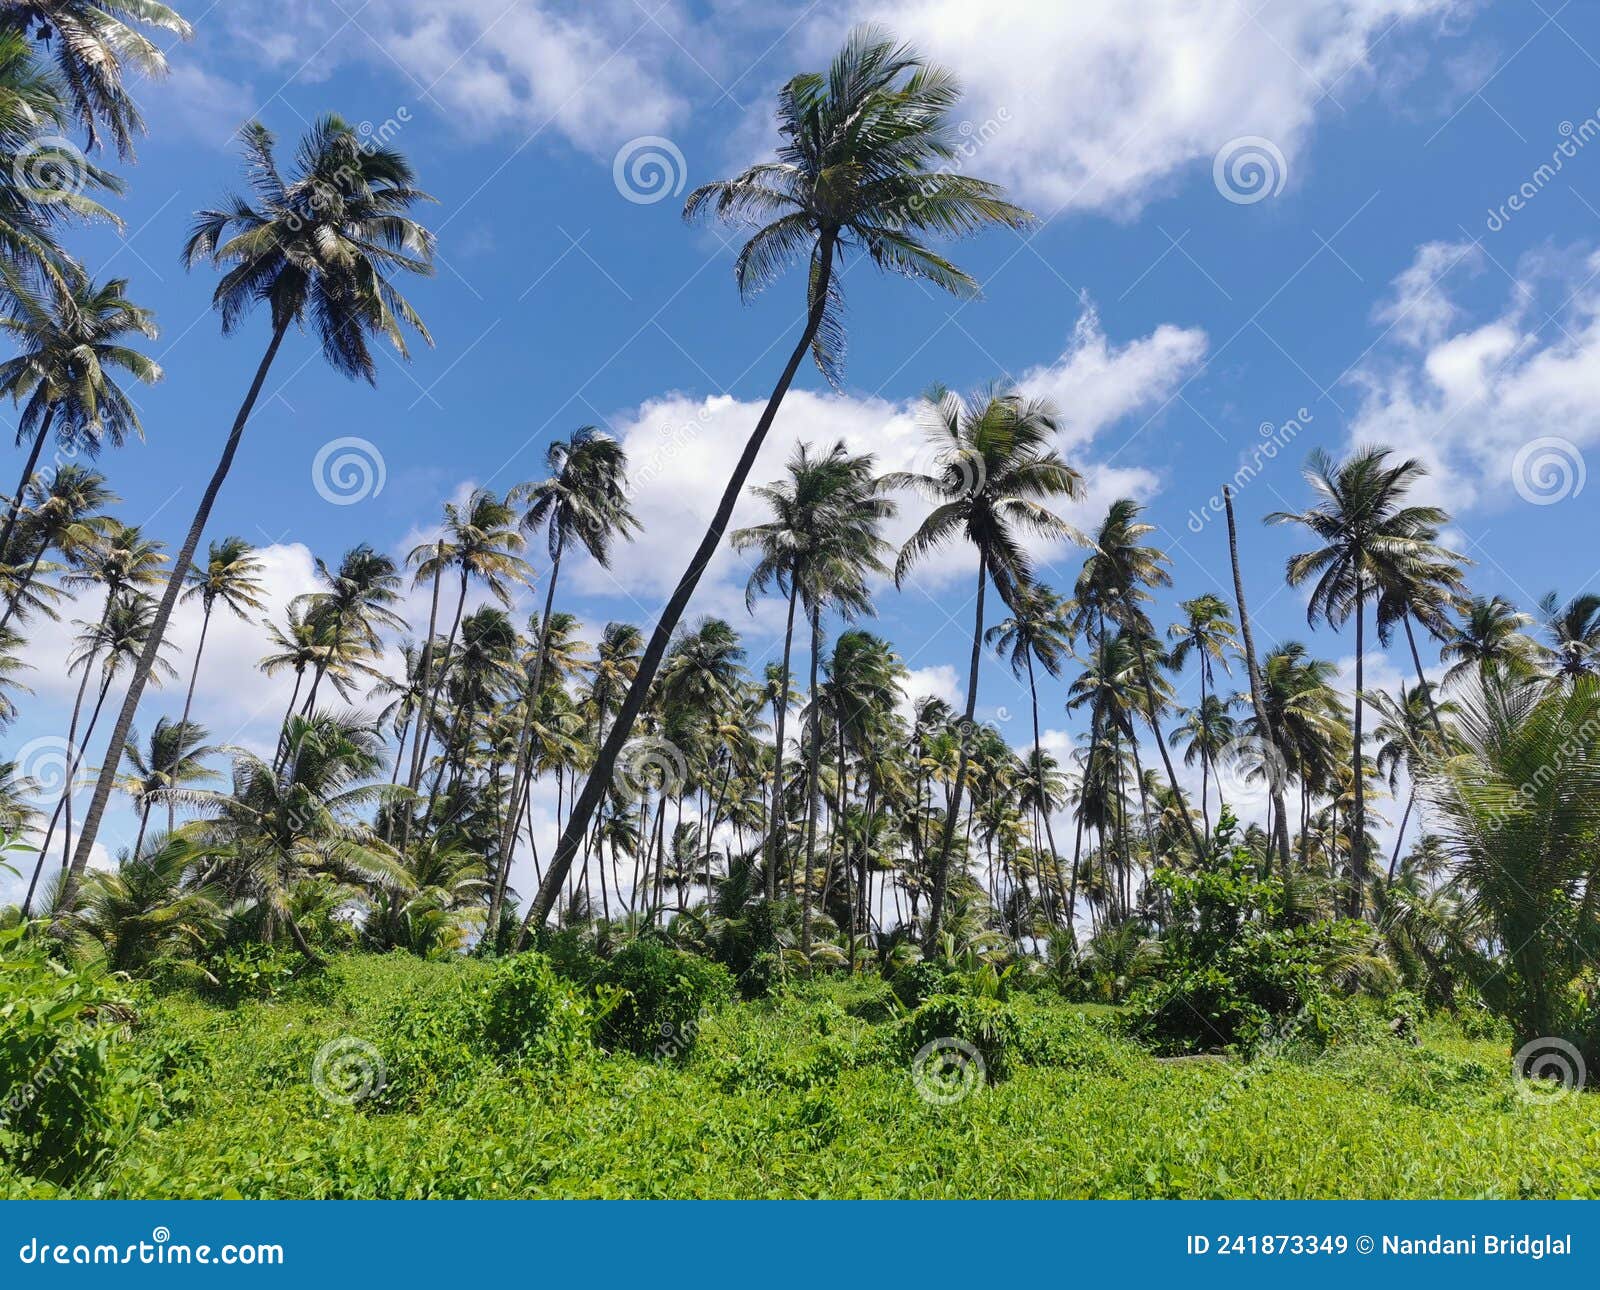 manzanilla mayaro road located along the coastline of east trinidad